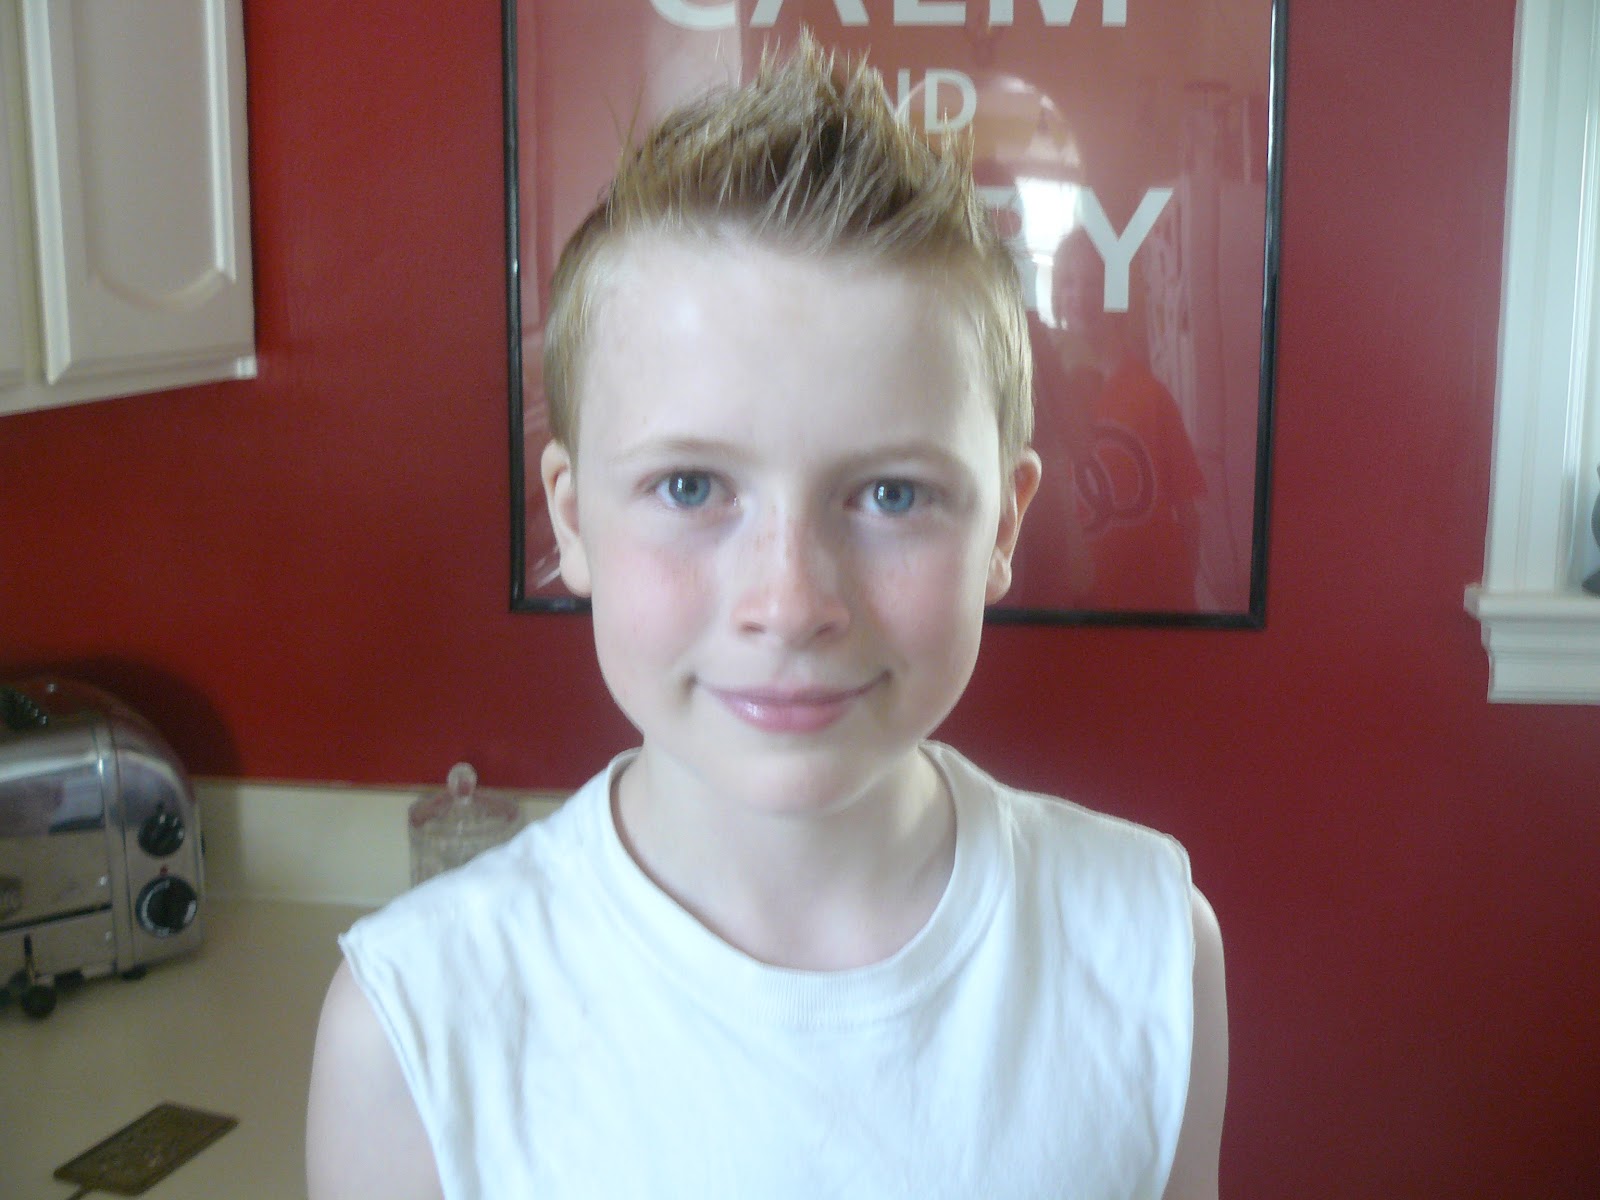 David Beckham Haircut June 2012